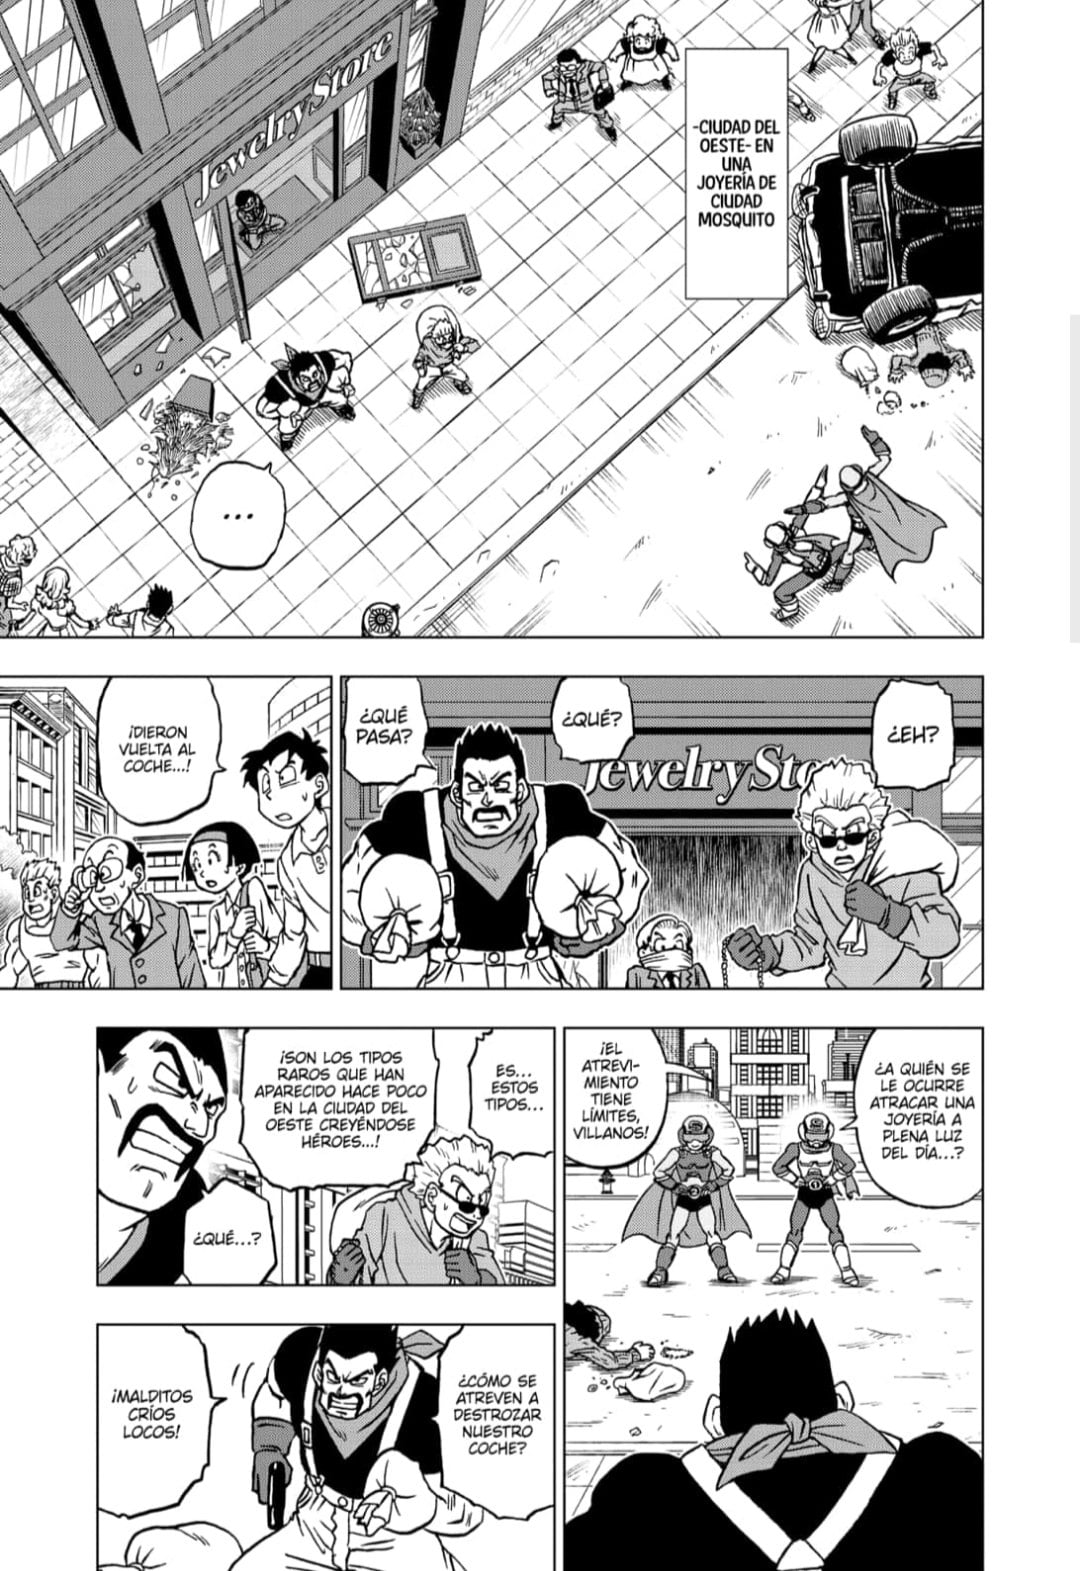 Dragon Ball Super - Manga 88: Cuándo sale y dónde podemos leerlo gratis y  al español » Hero Network